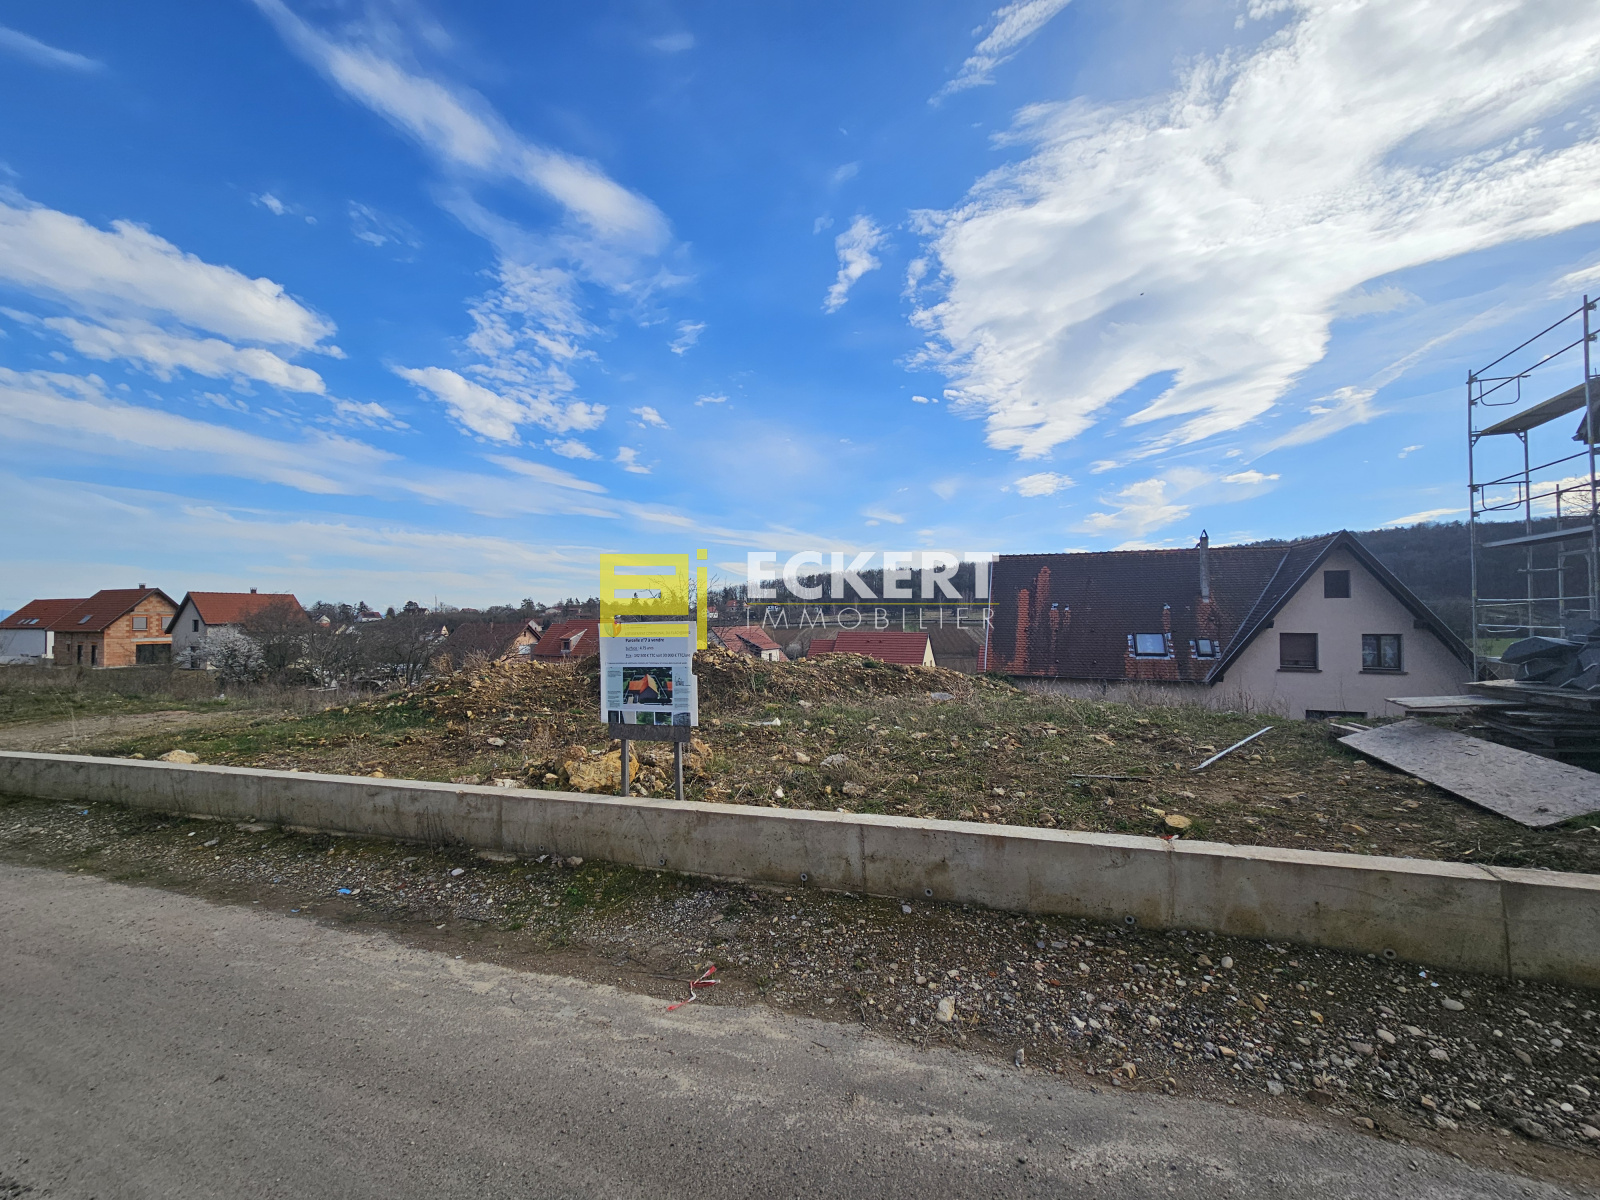 Vente Terrain à Rosenwiller (67560) - Eckert Immobilier